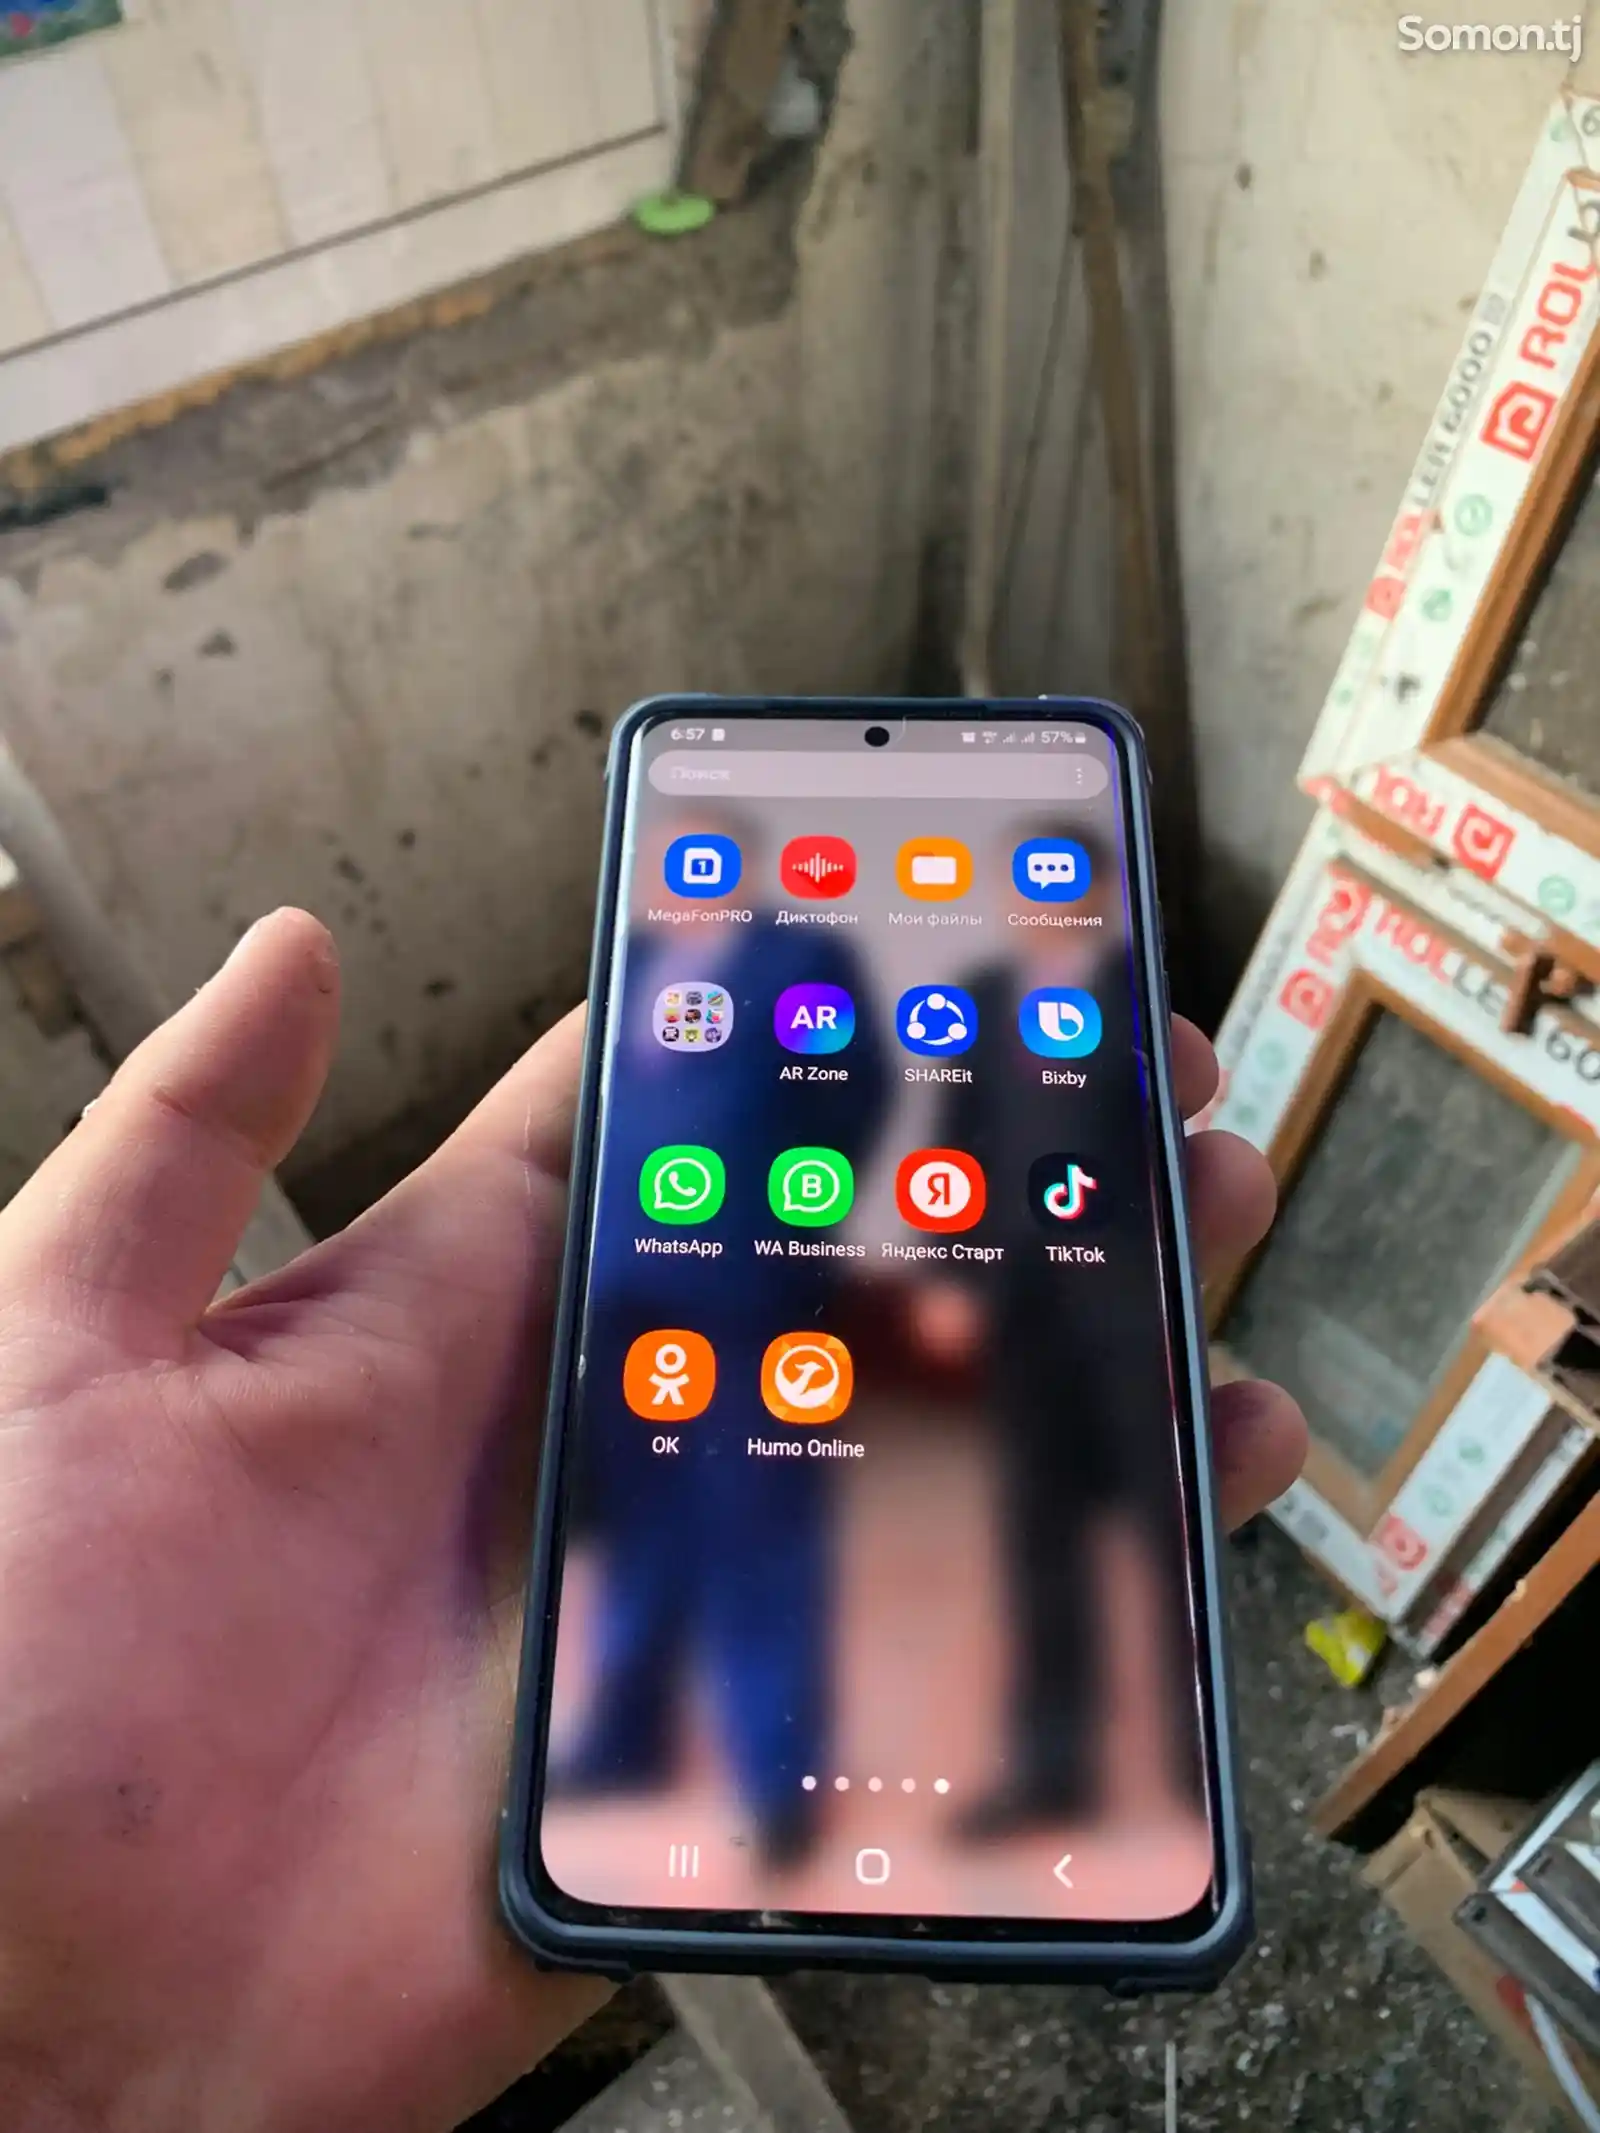 Samsung Galaxy S21 Ultra-1